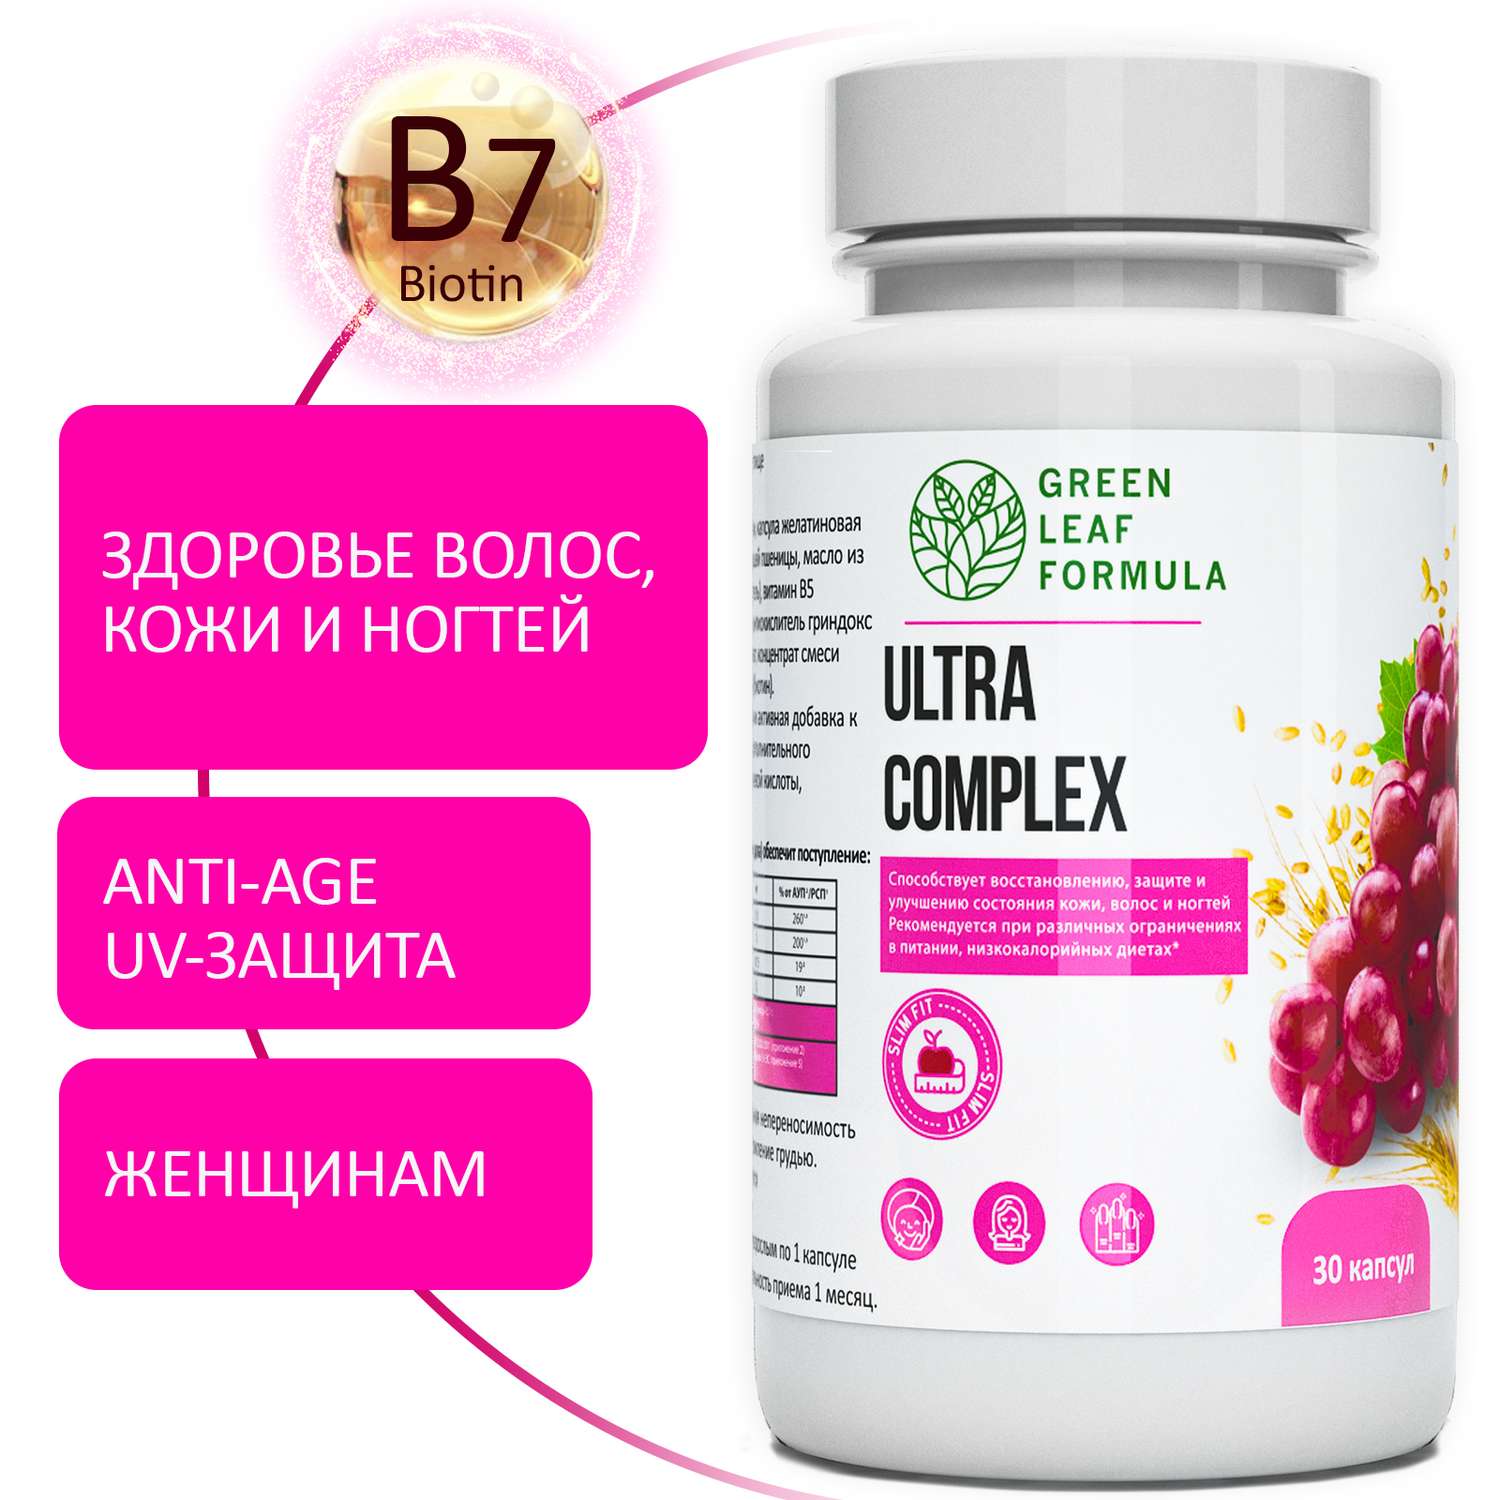 Комплекс витаминов для женщин Green Leaf Formula биотин витамины для кожи волос ногтей 790 мг 30 капсул - фото 1